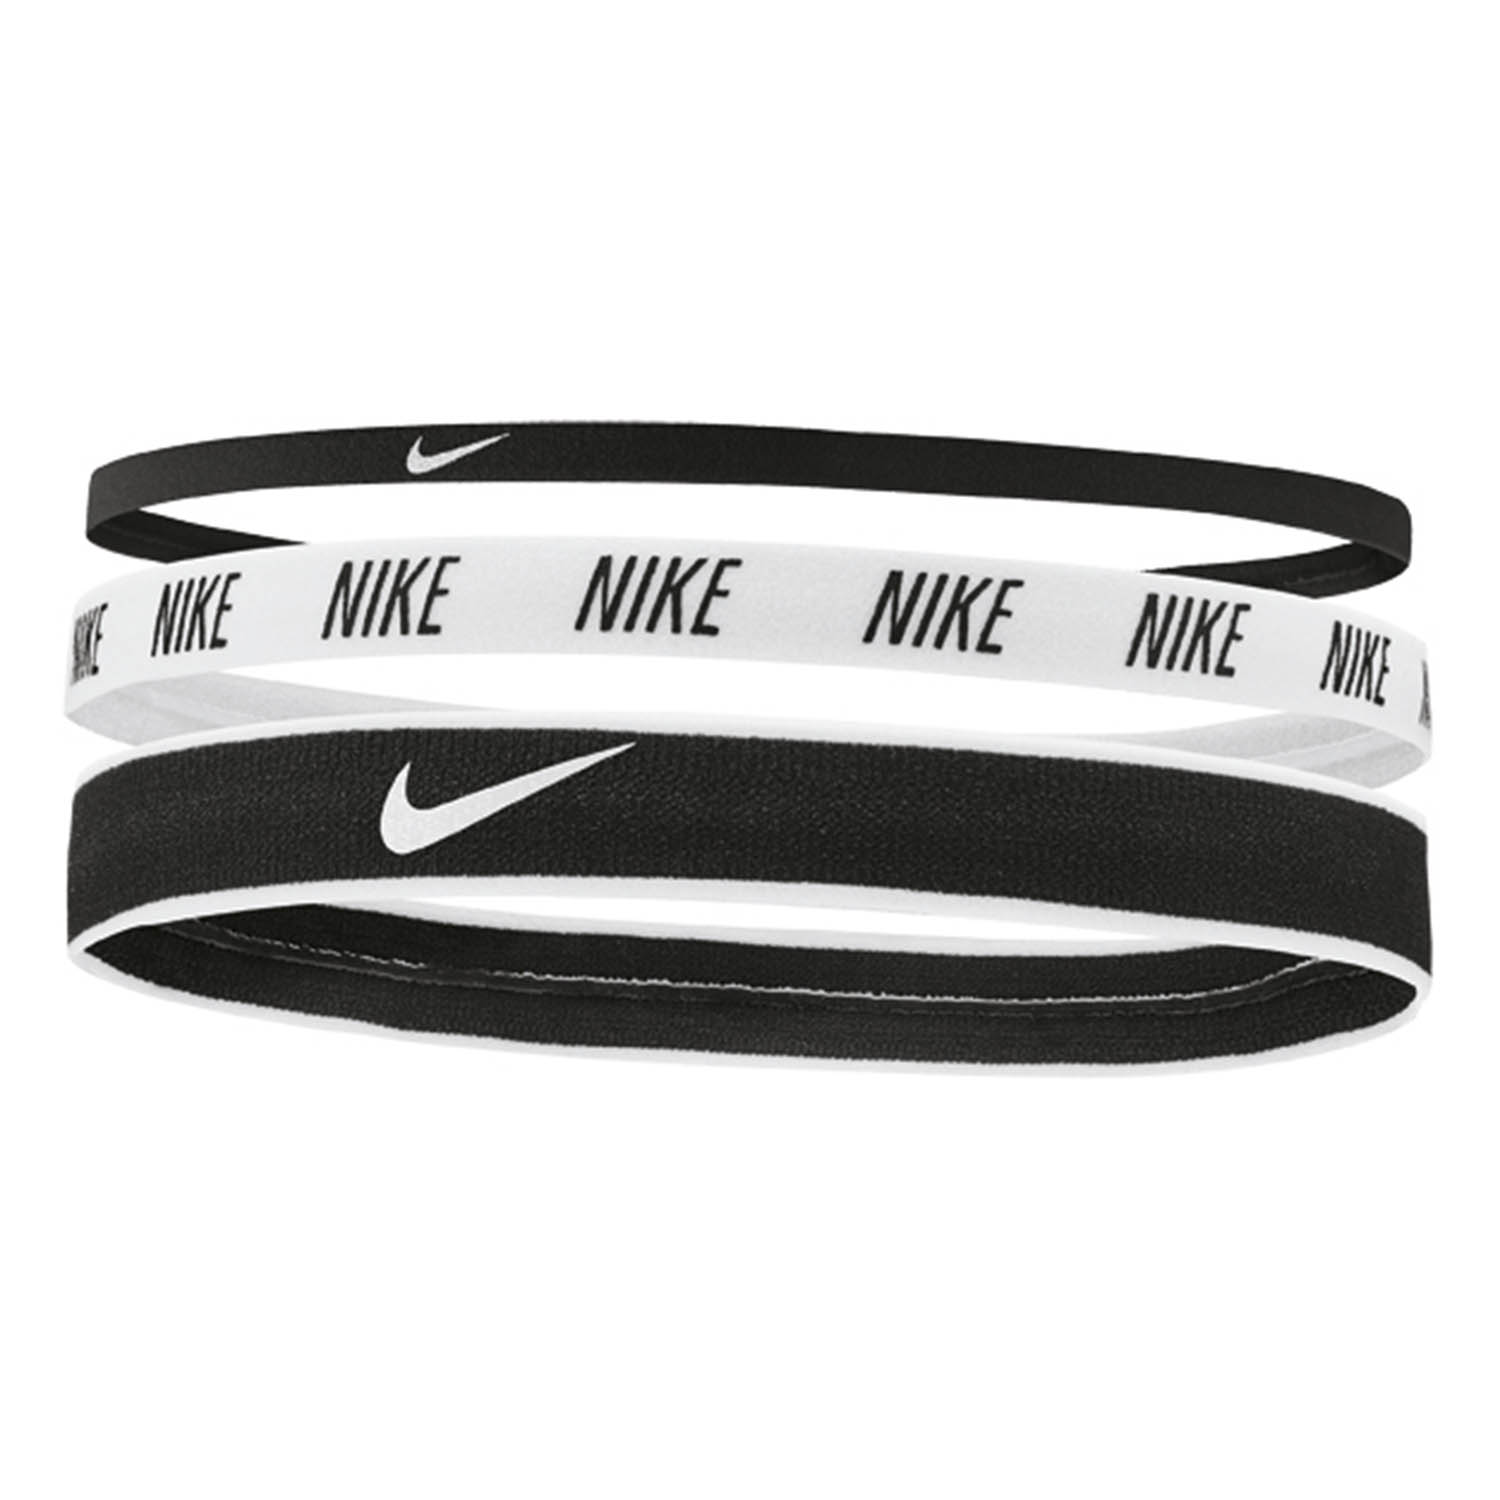 Nike Logo x 3 Mini Hairbands - Black/White